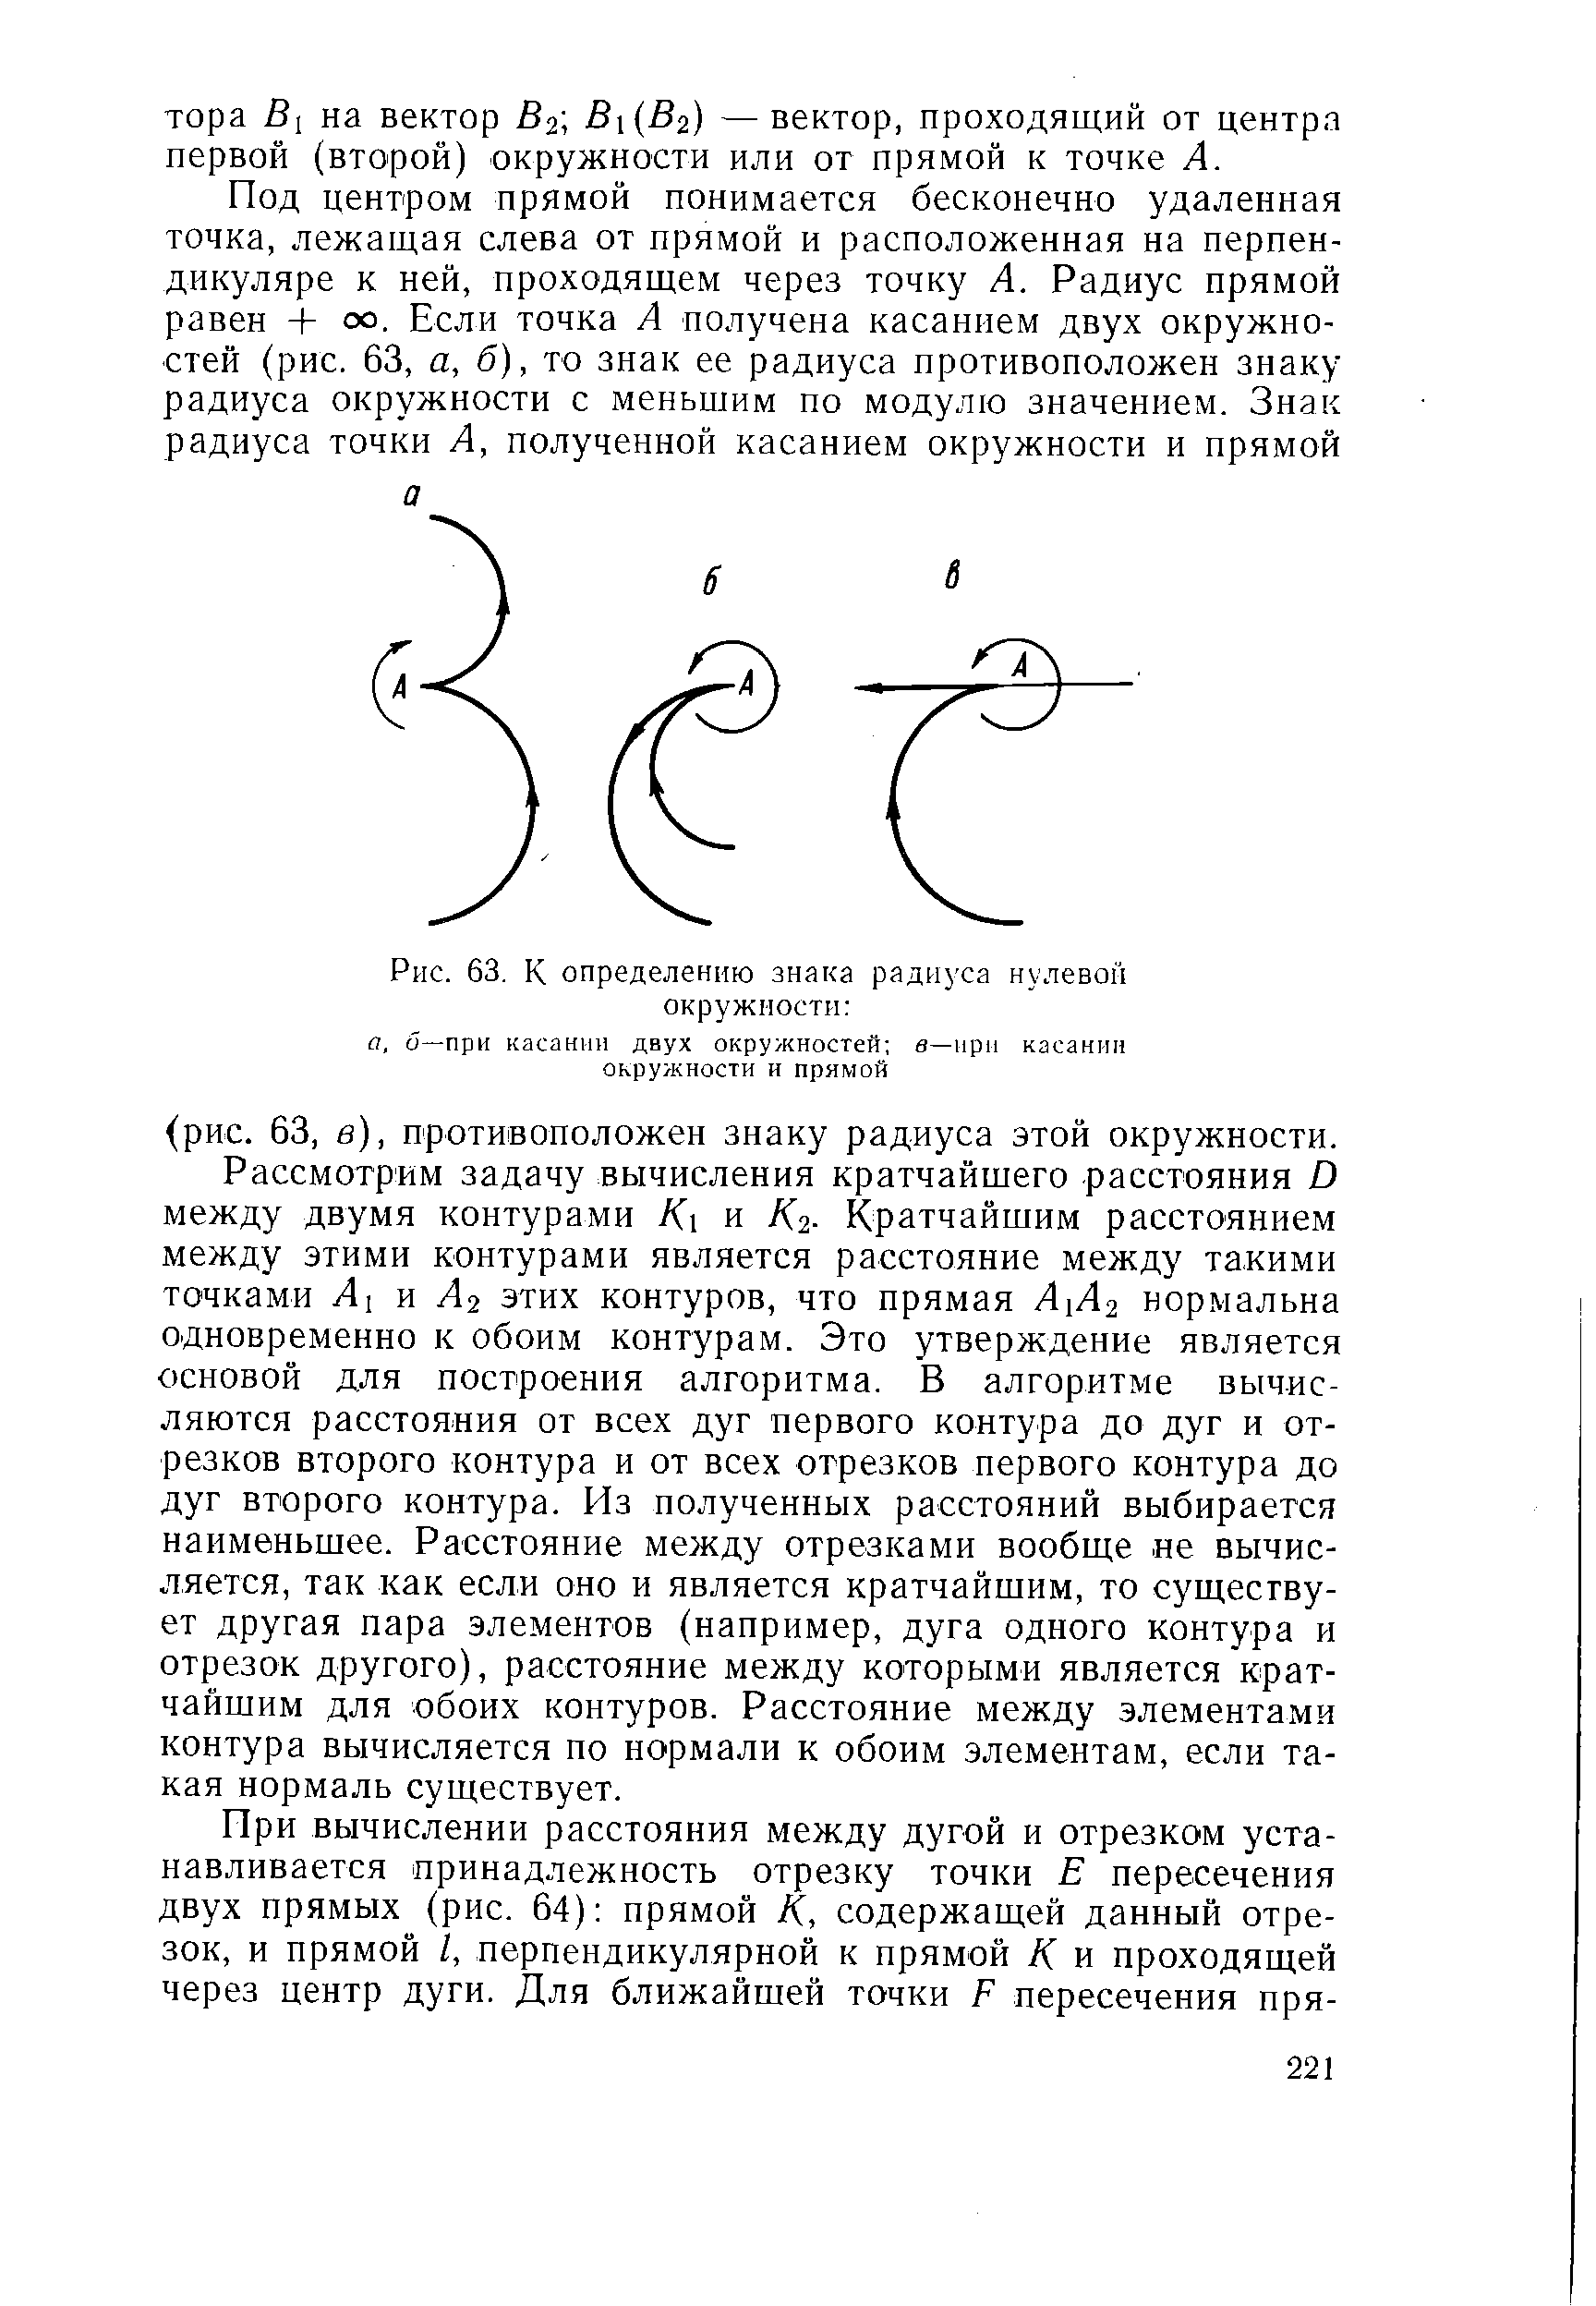 Рис. 63. К определению знака радиуса нулевой окружиости 
